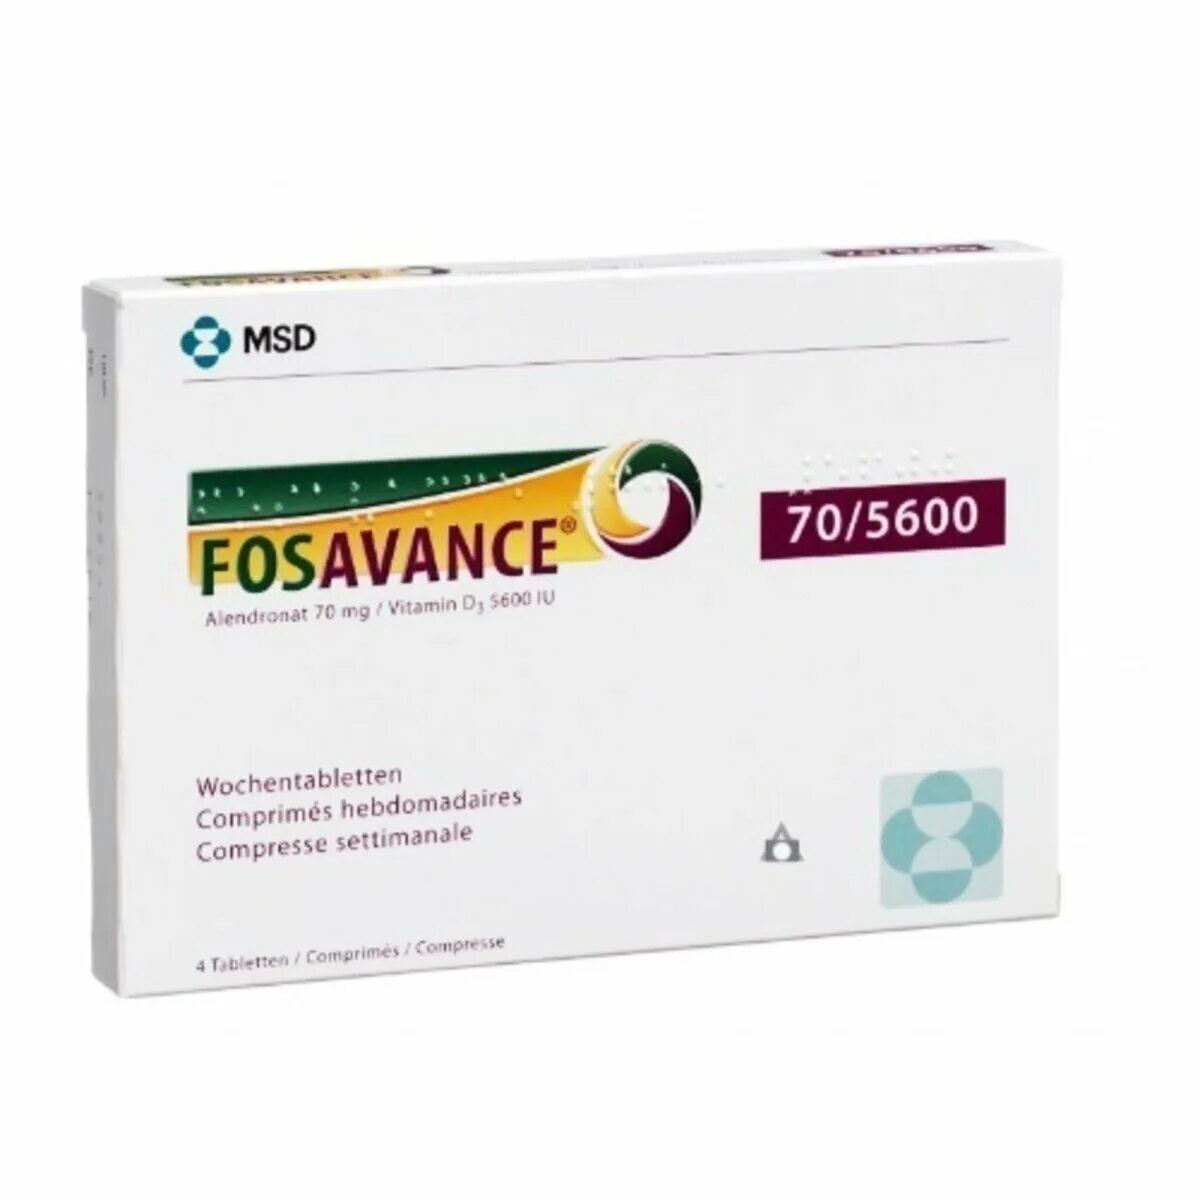 Фосаванс. Фосамакс 70 мг. Алендронат фосамакс. Fosavance 70 MG. Алендроновая кислота фосамакс.